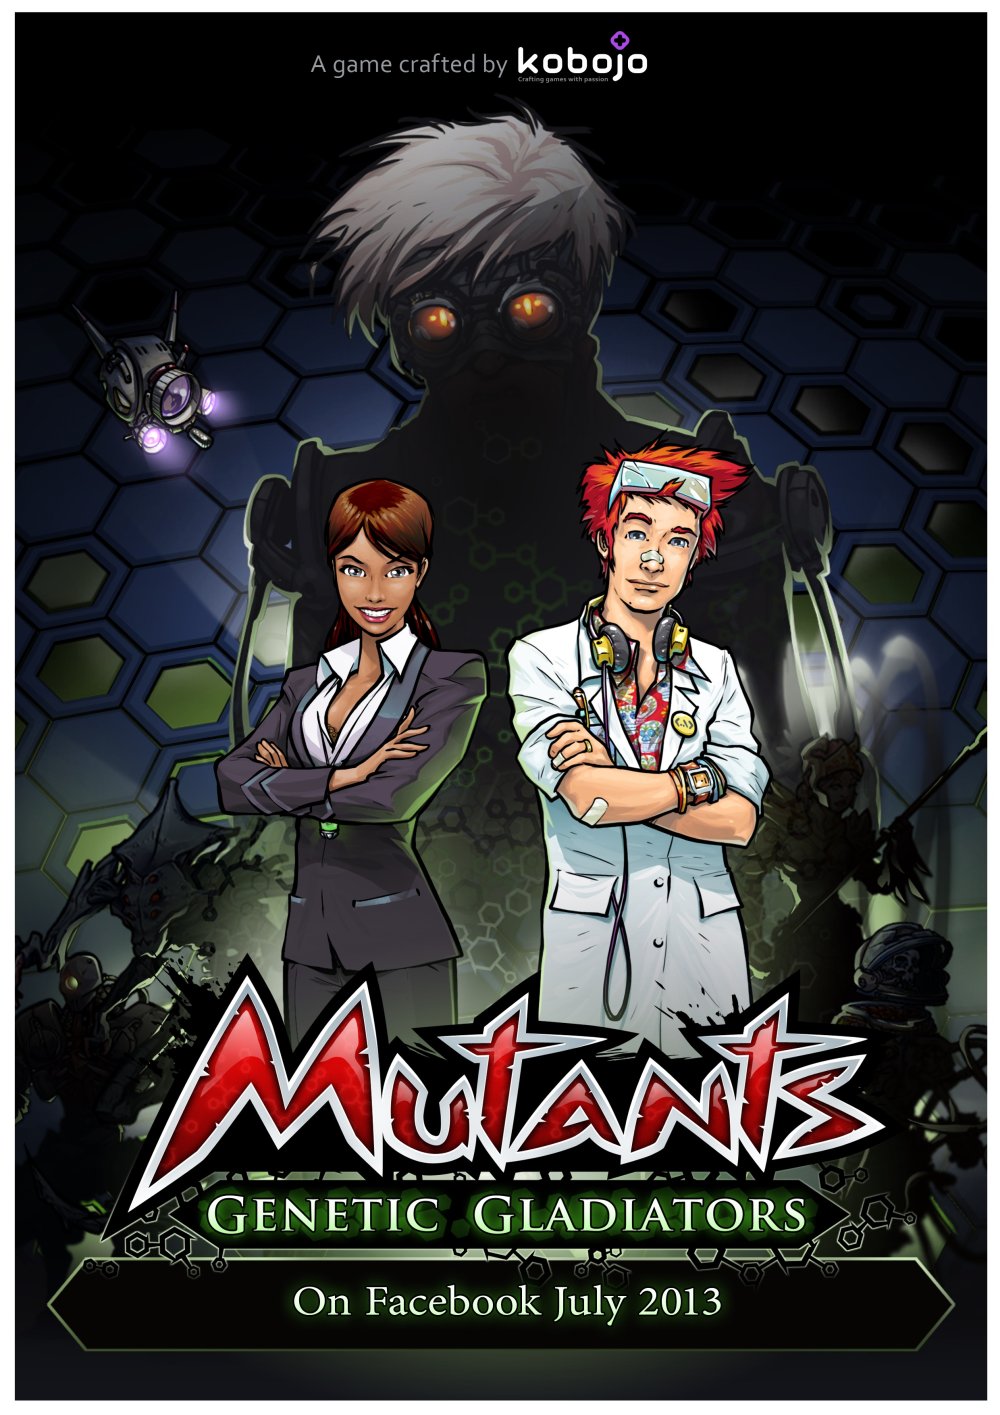 Kobojo Mutants: Von Mutanten und Genetischen Gladiatoren